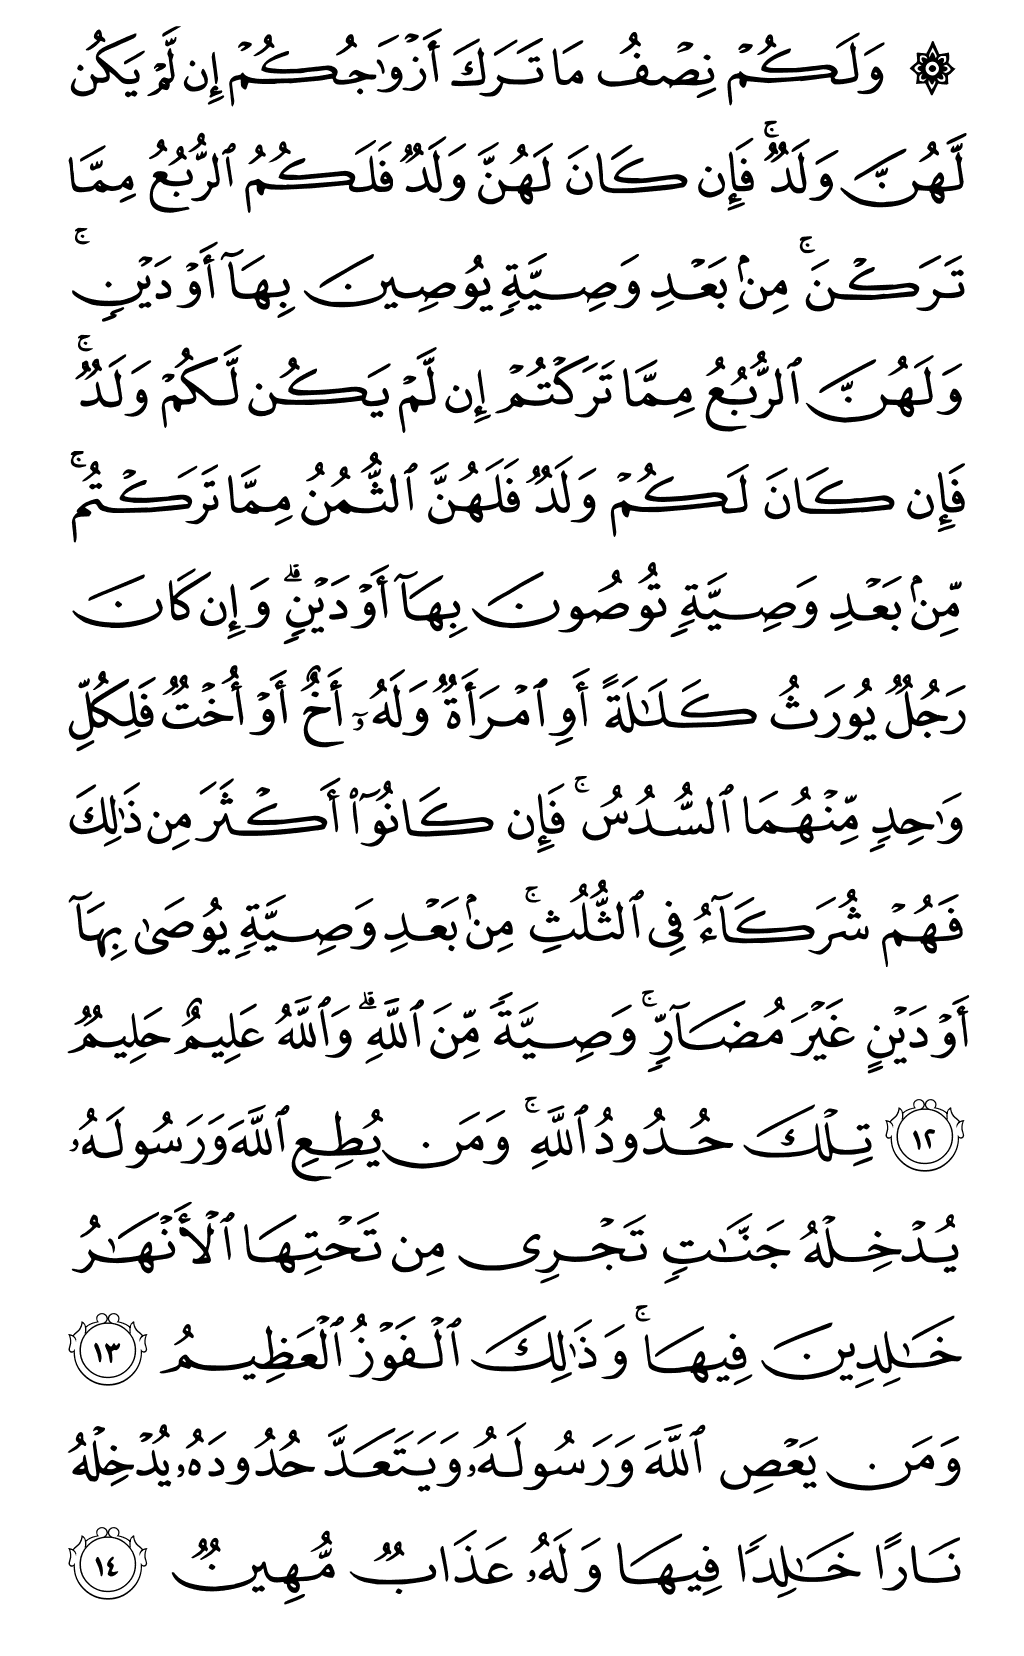 الصفحة رقم 79 من القرآن الكريم